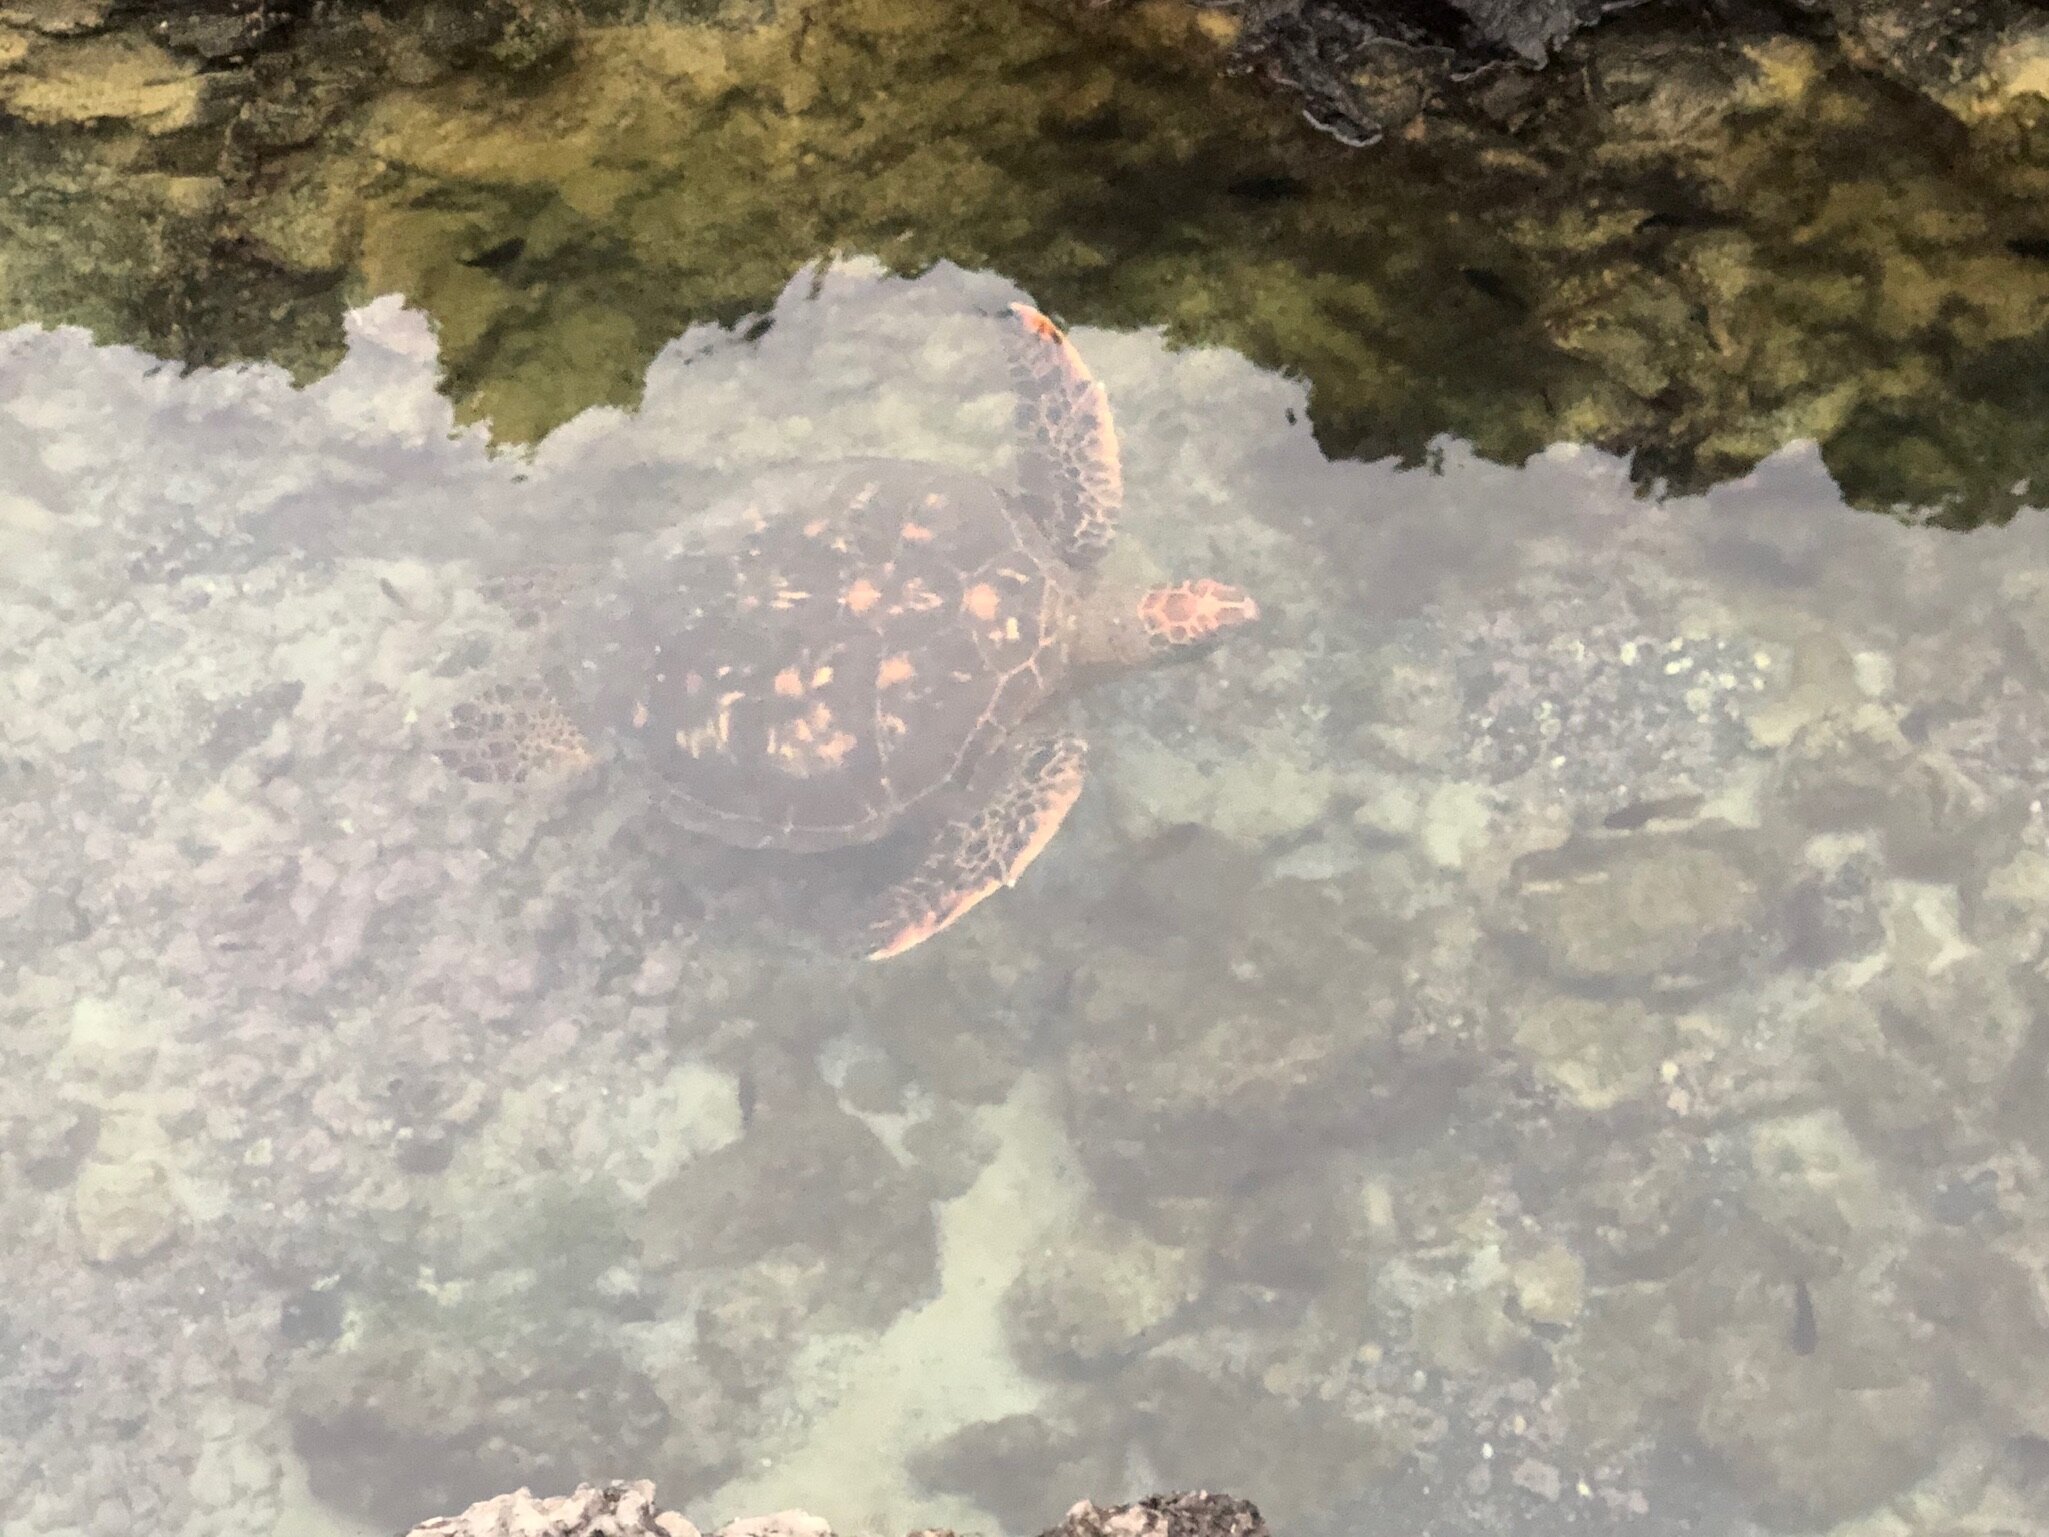 turtle-swimming-in-galapagos-ocean.JPG